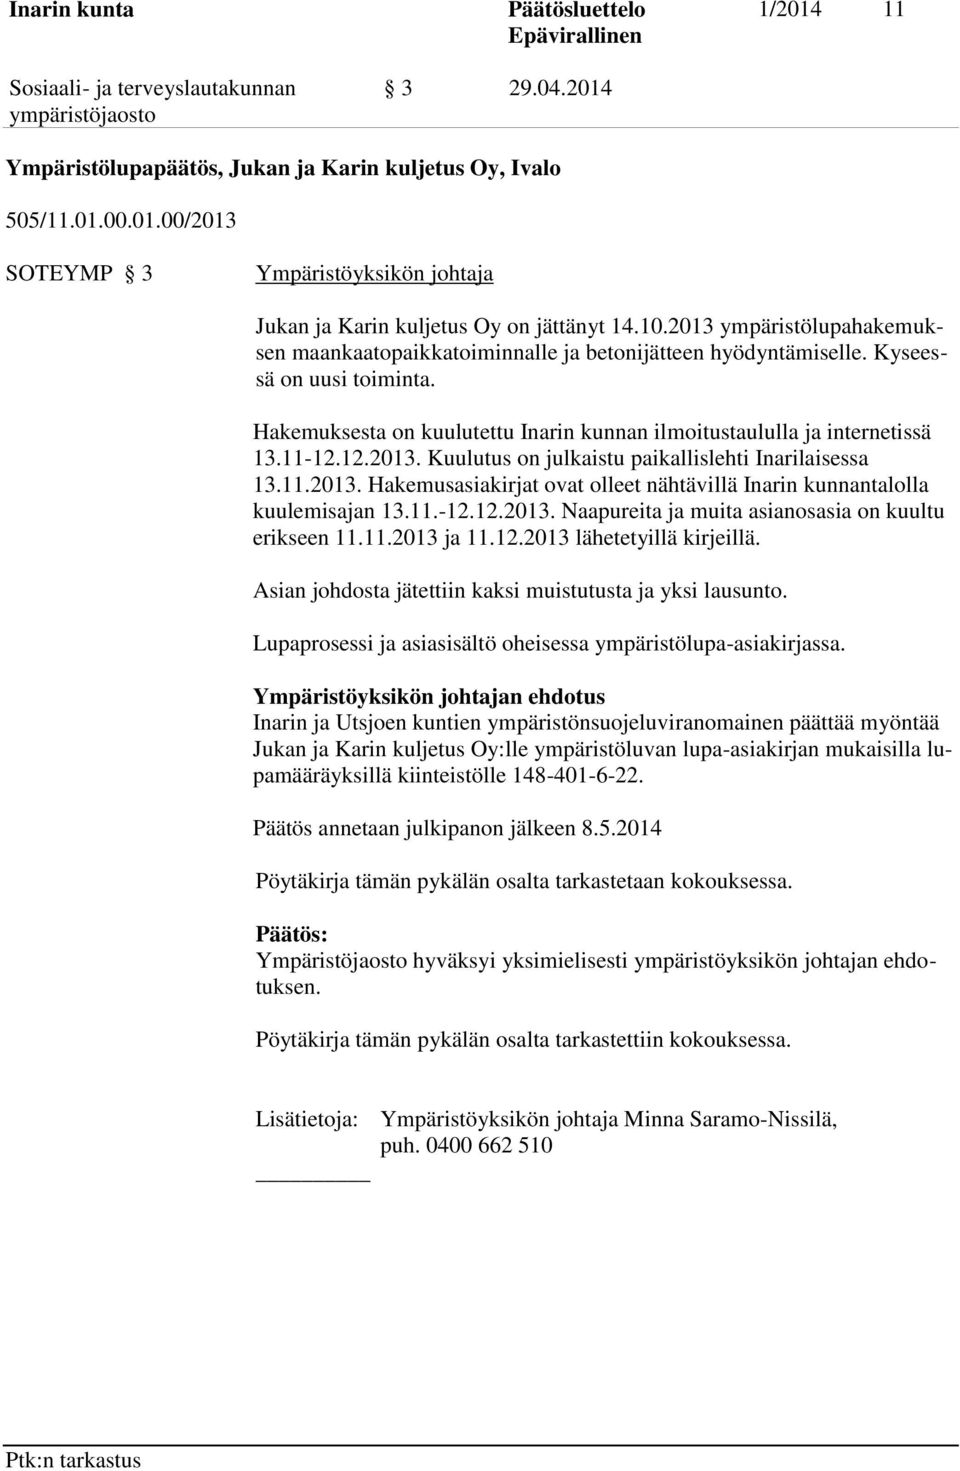 12.2013. Kuulutus on julkaistu paikallislehti Inarilaisessa 13.11.2013. Hakemusasiakirjat ovat olleet nähtävillä Inarin kunnantalolla kuulemisajan 13.11.-12.12.2013. Naapureita ja muita asianosasia on kuultu erikseen 11.